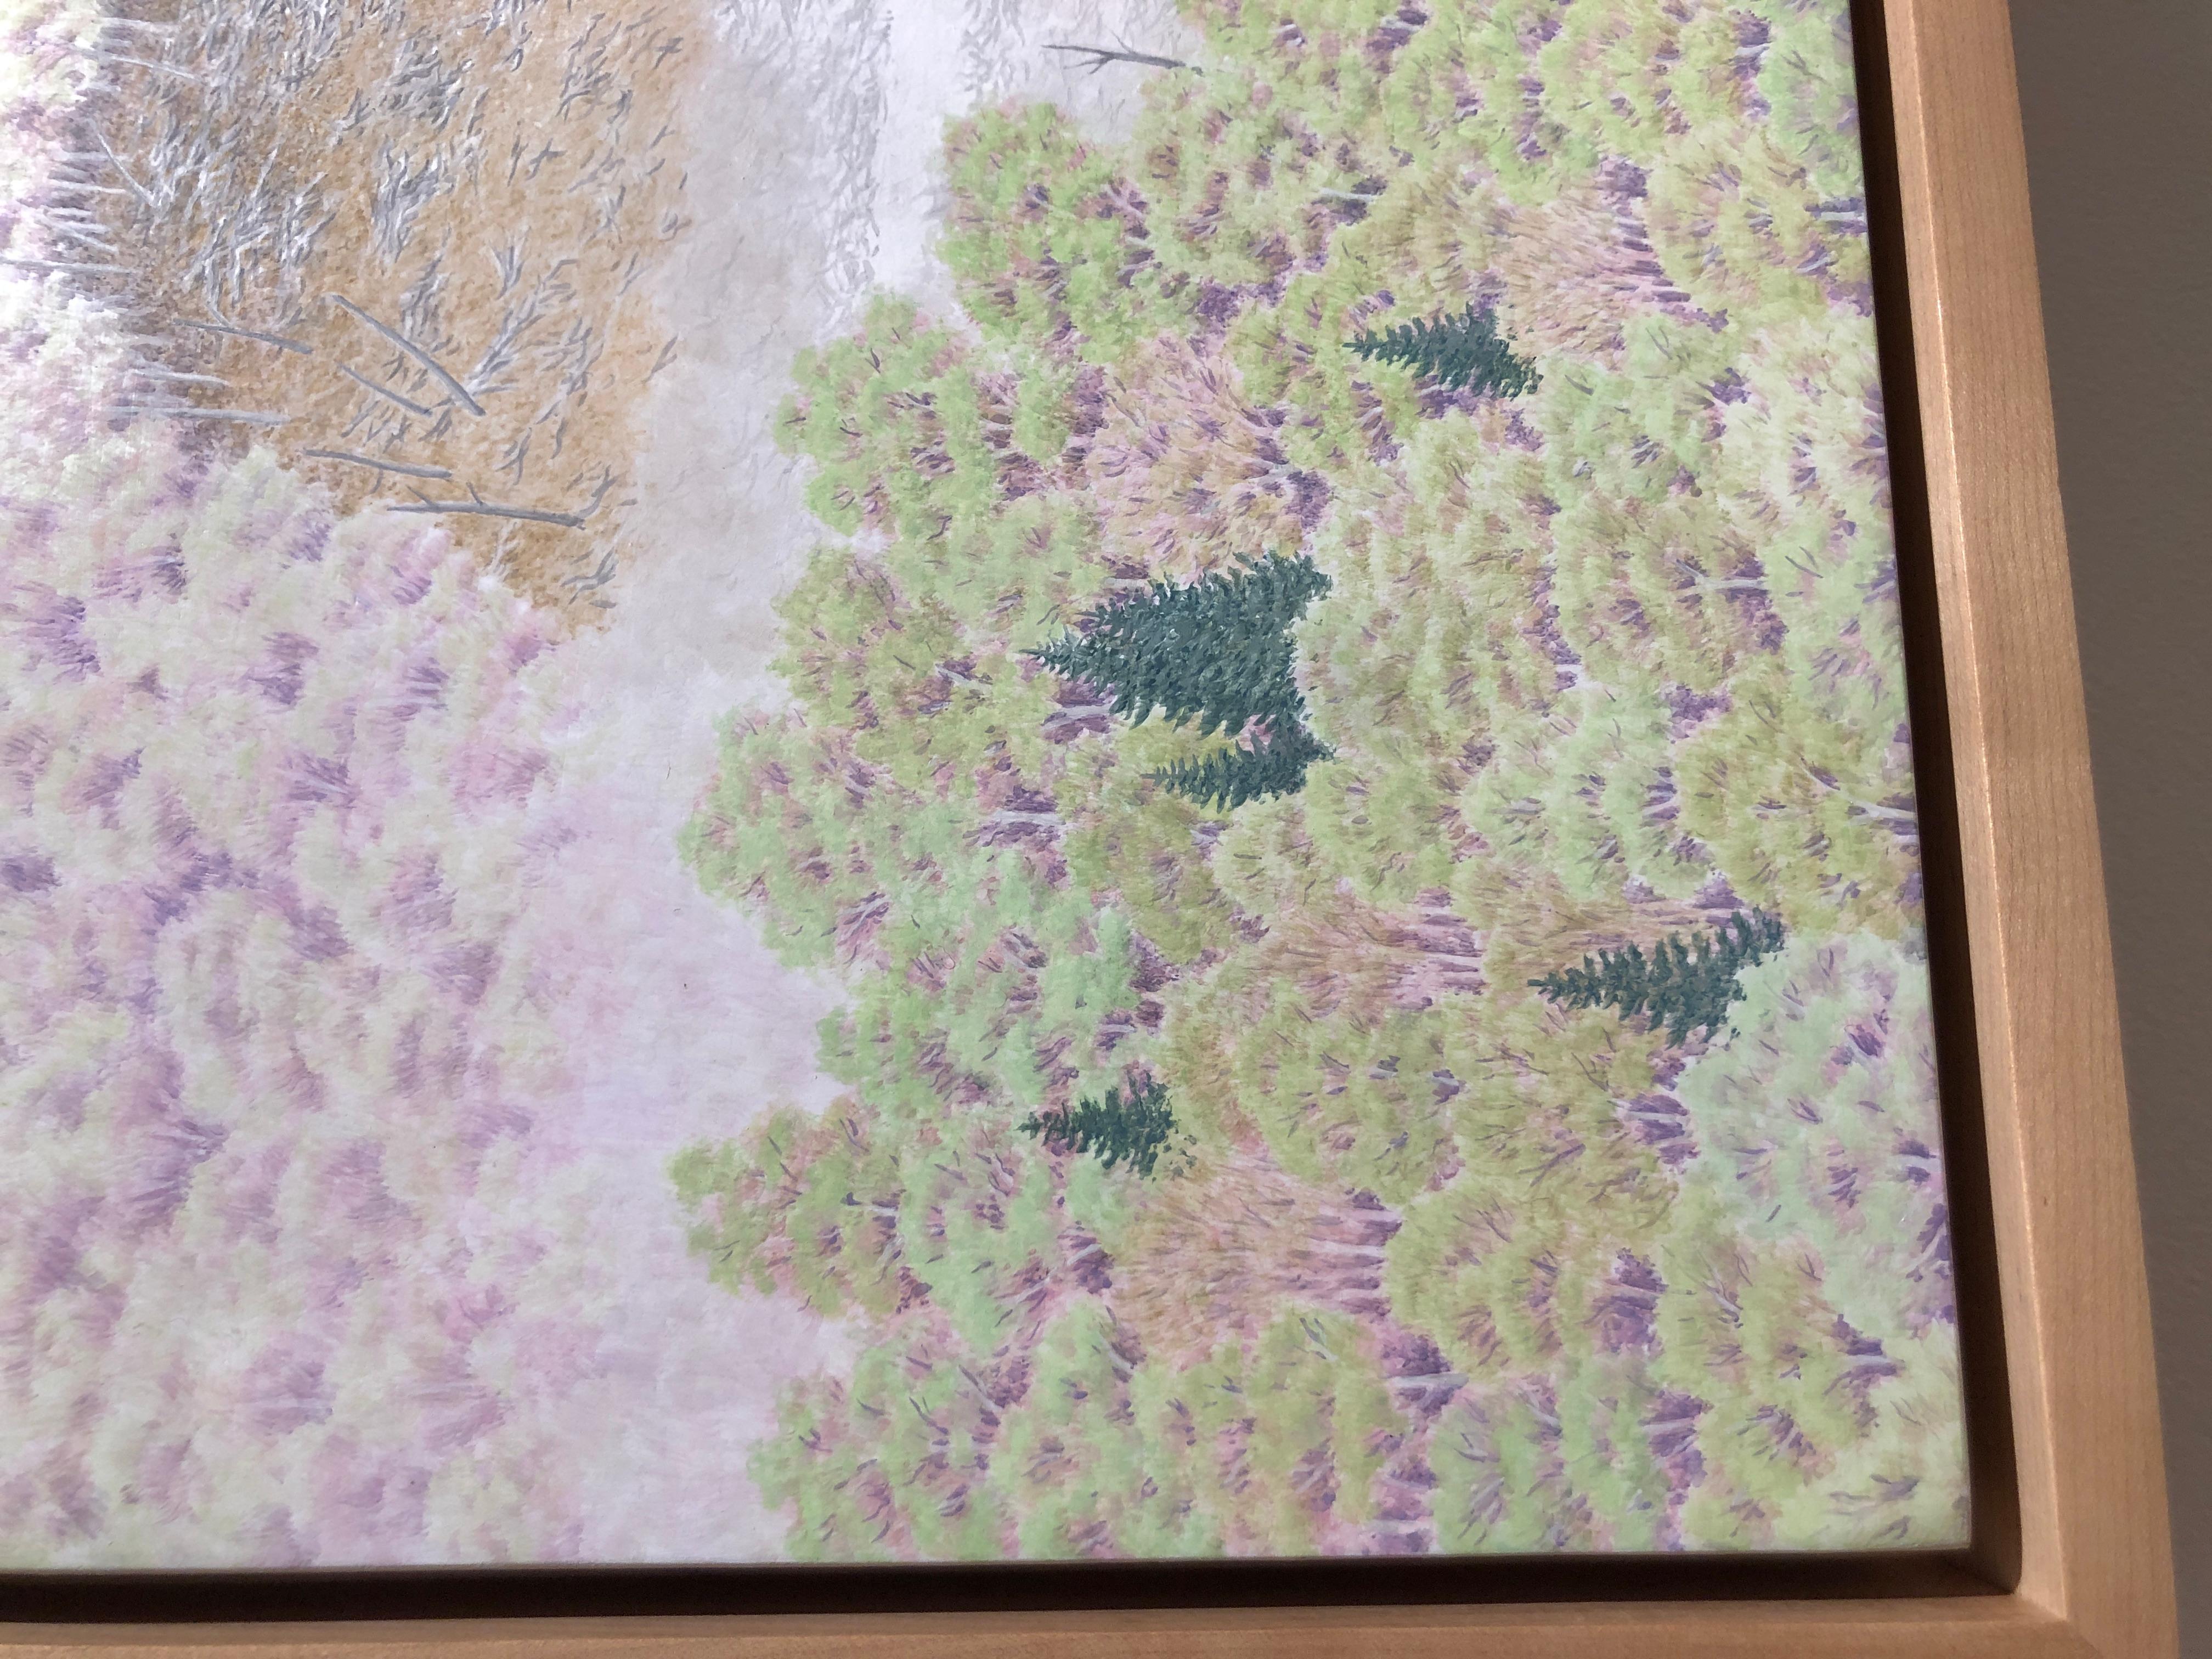 Les peintures de paysages d'Alan Bray, dans le centre du Maine, sa région natale, explorent la dynamique toujours changeante entre la nature et l'humanité. Ses peintures capturent un pas de deux asymétrique. Peints avec une précision sans compromis